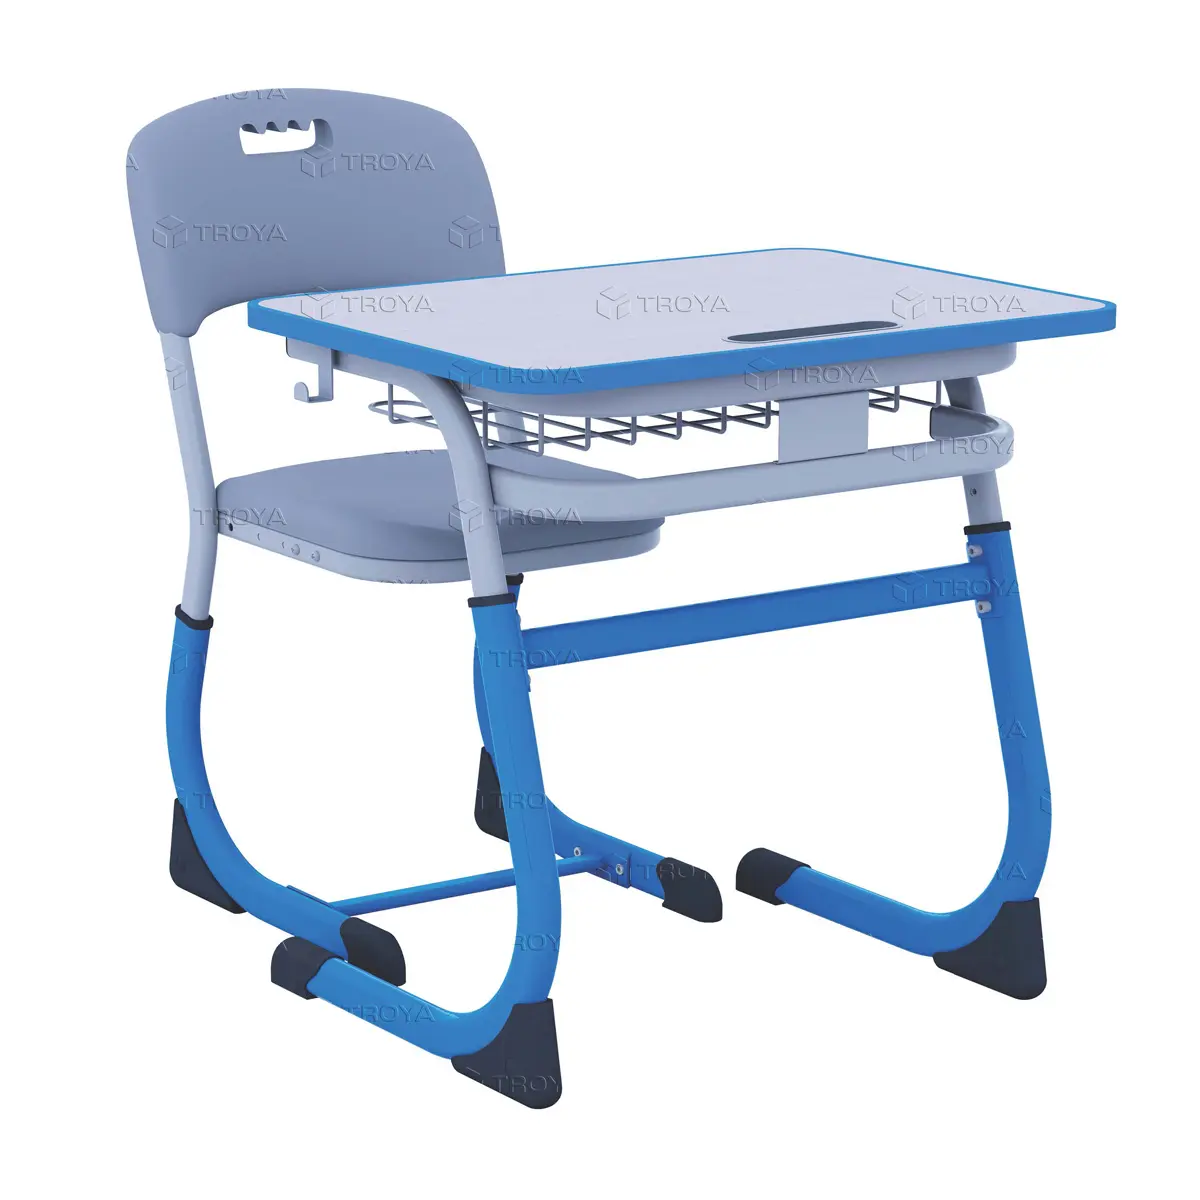 Ortaokul için masa ve sandalye seti "SMARTY" gri/mavi renk, yüksek kaliteli üretici fiyatları